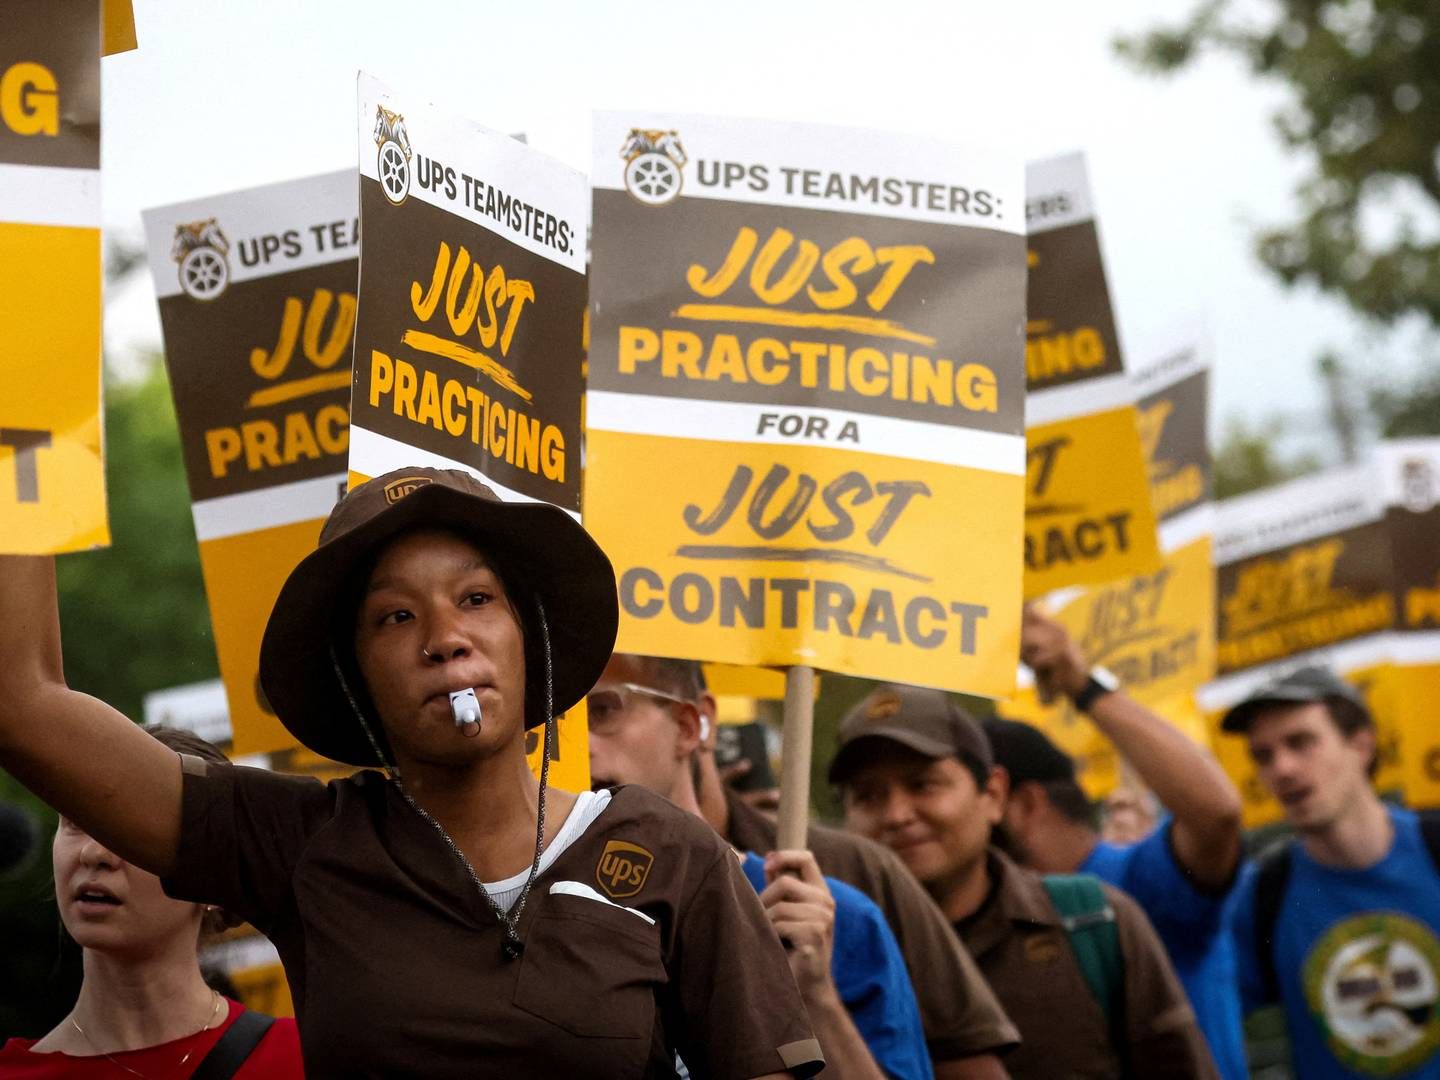 UPS-ansatte forberedte sig på en strejke, som dog blev afværget, da selskabet indgik en dyr overenskomstaftale i juli. | Foto: Brendan Mcdermid/Reuters/Ritzau Scanpix